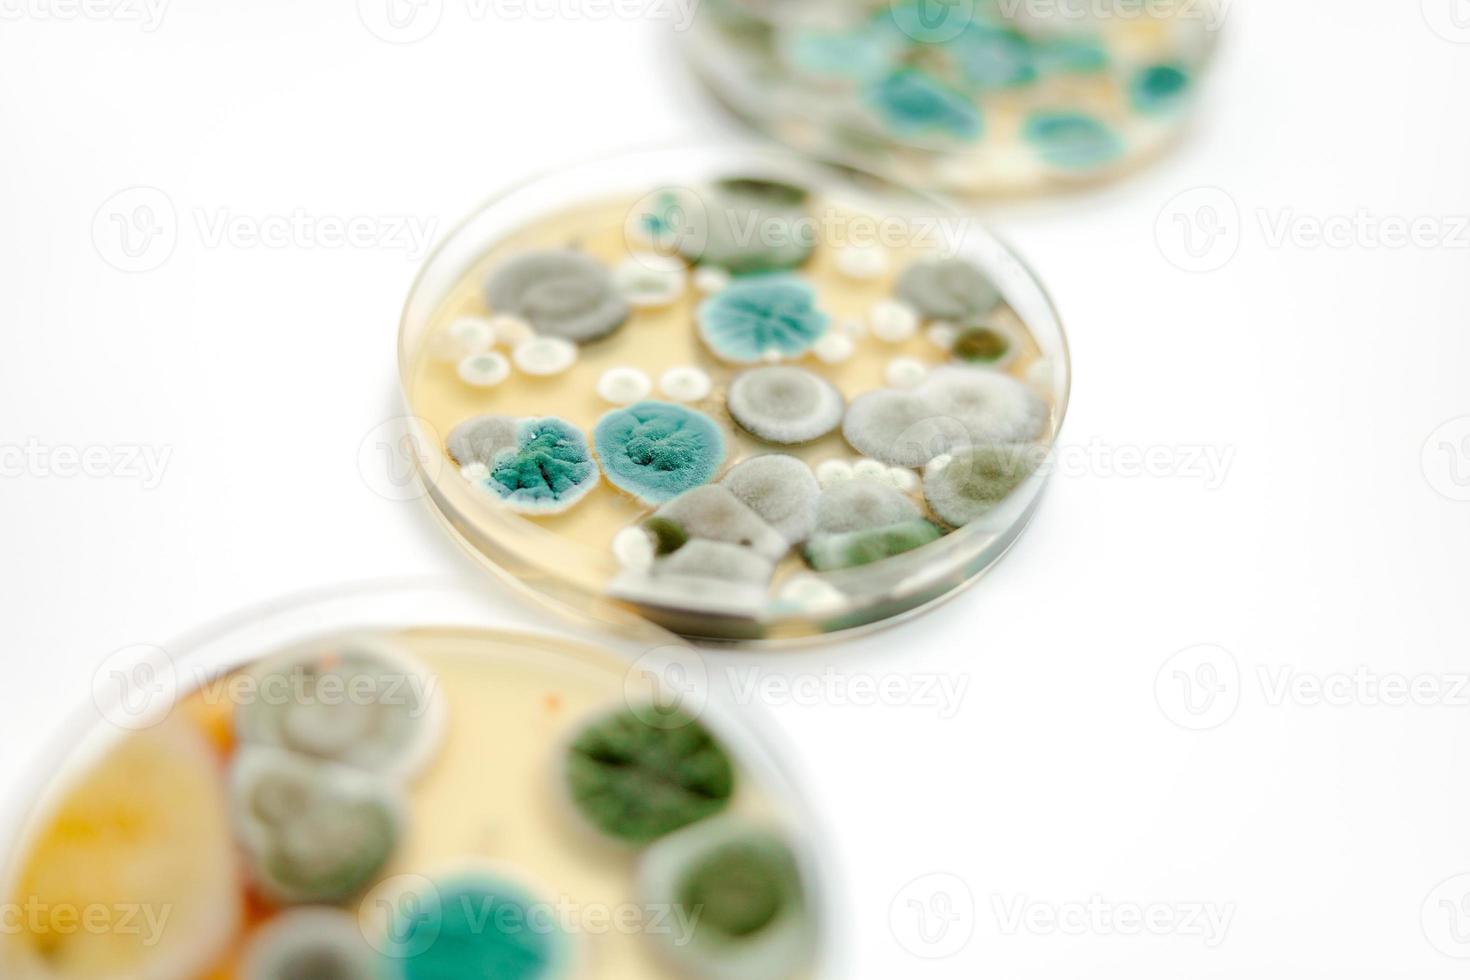 muestras de moho sobre fondo blanco. una placa de petri con colonias de microorganismos para análisis bacteriológico en un laboratorio microbiológico. vista de cerca del molde. foto